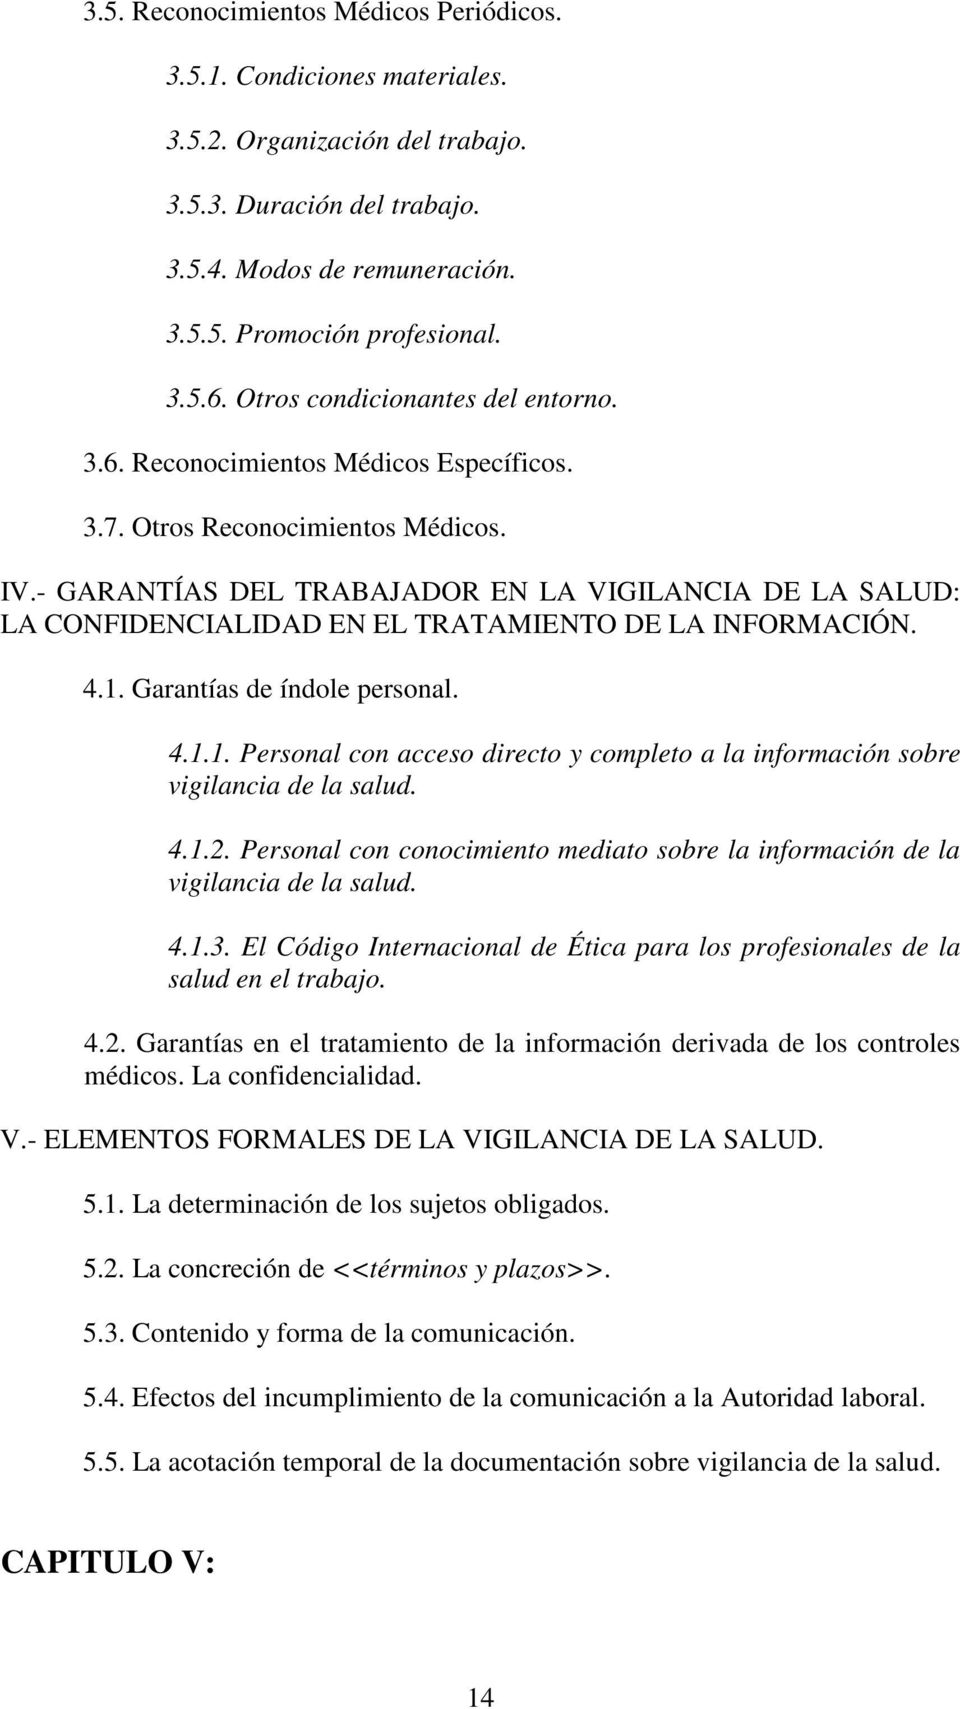 - GARANTÍAS DEL TRABAJADOR EN LA VIGILANCIA DE LA SALUD: LA CONFIDENCIALIDAD EN EL TRATAMIENTO DE LA INFORMACIÓN. 4.1.